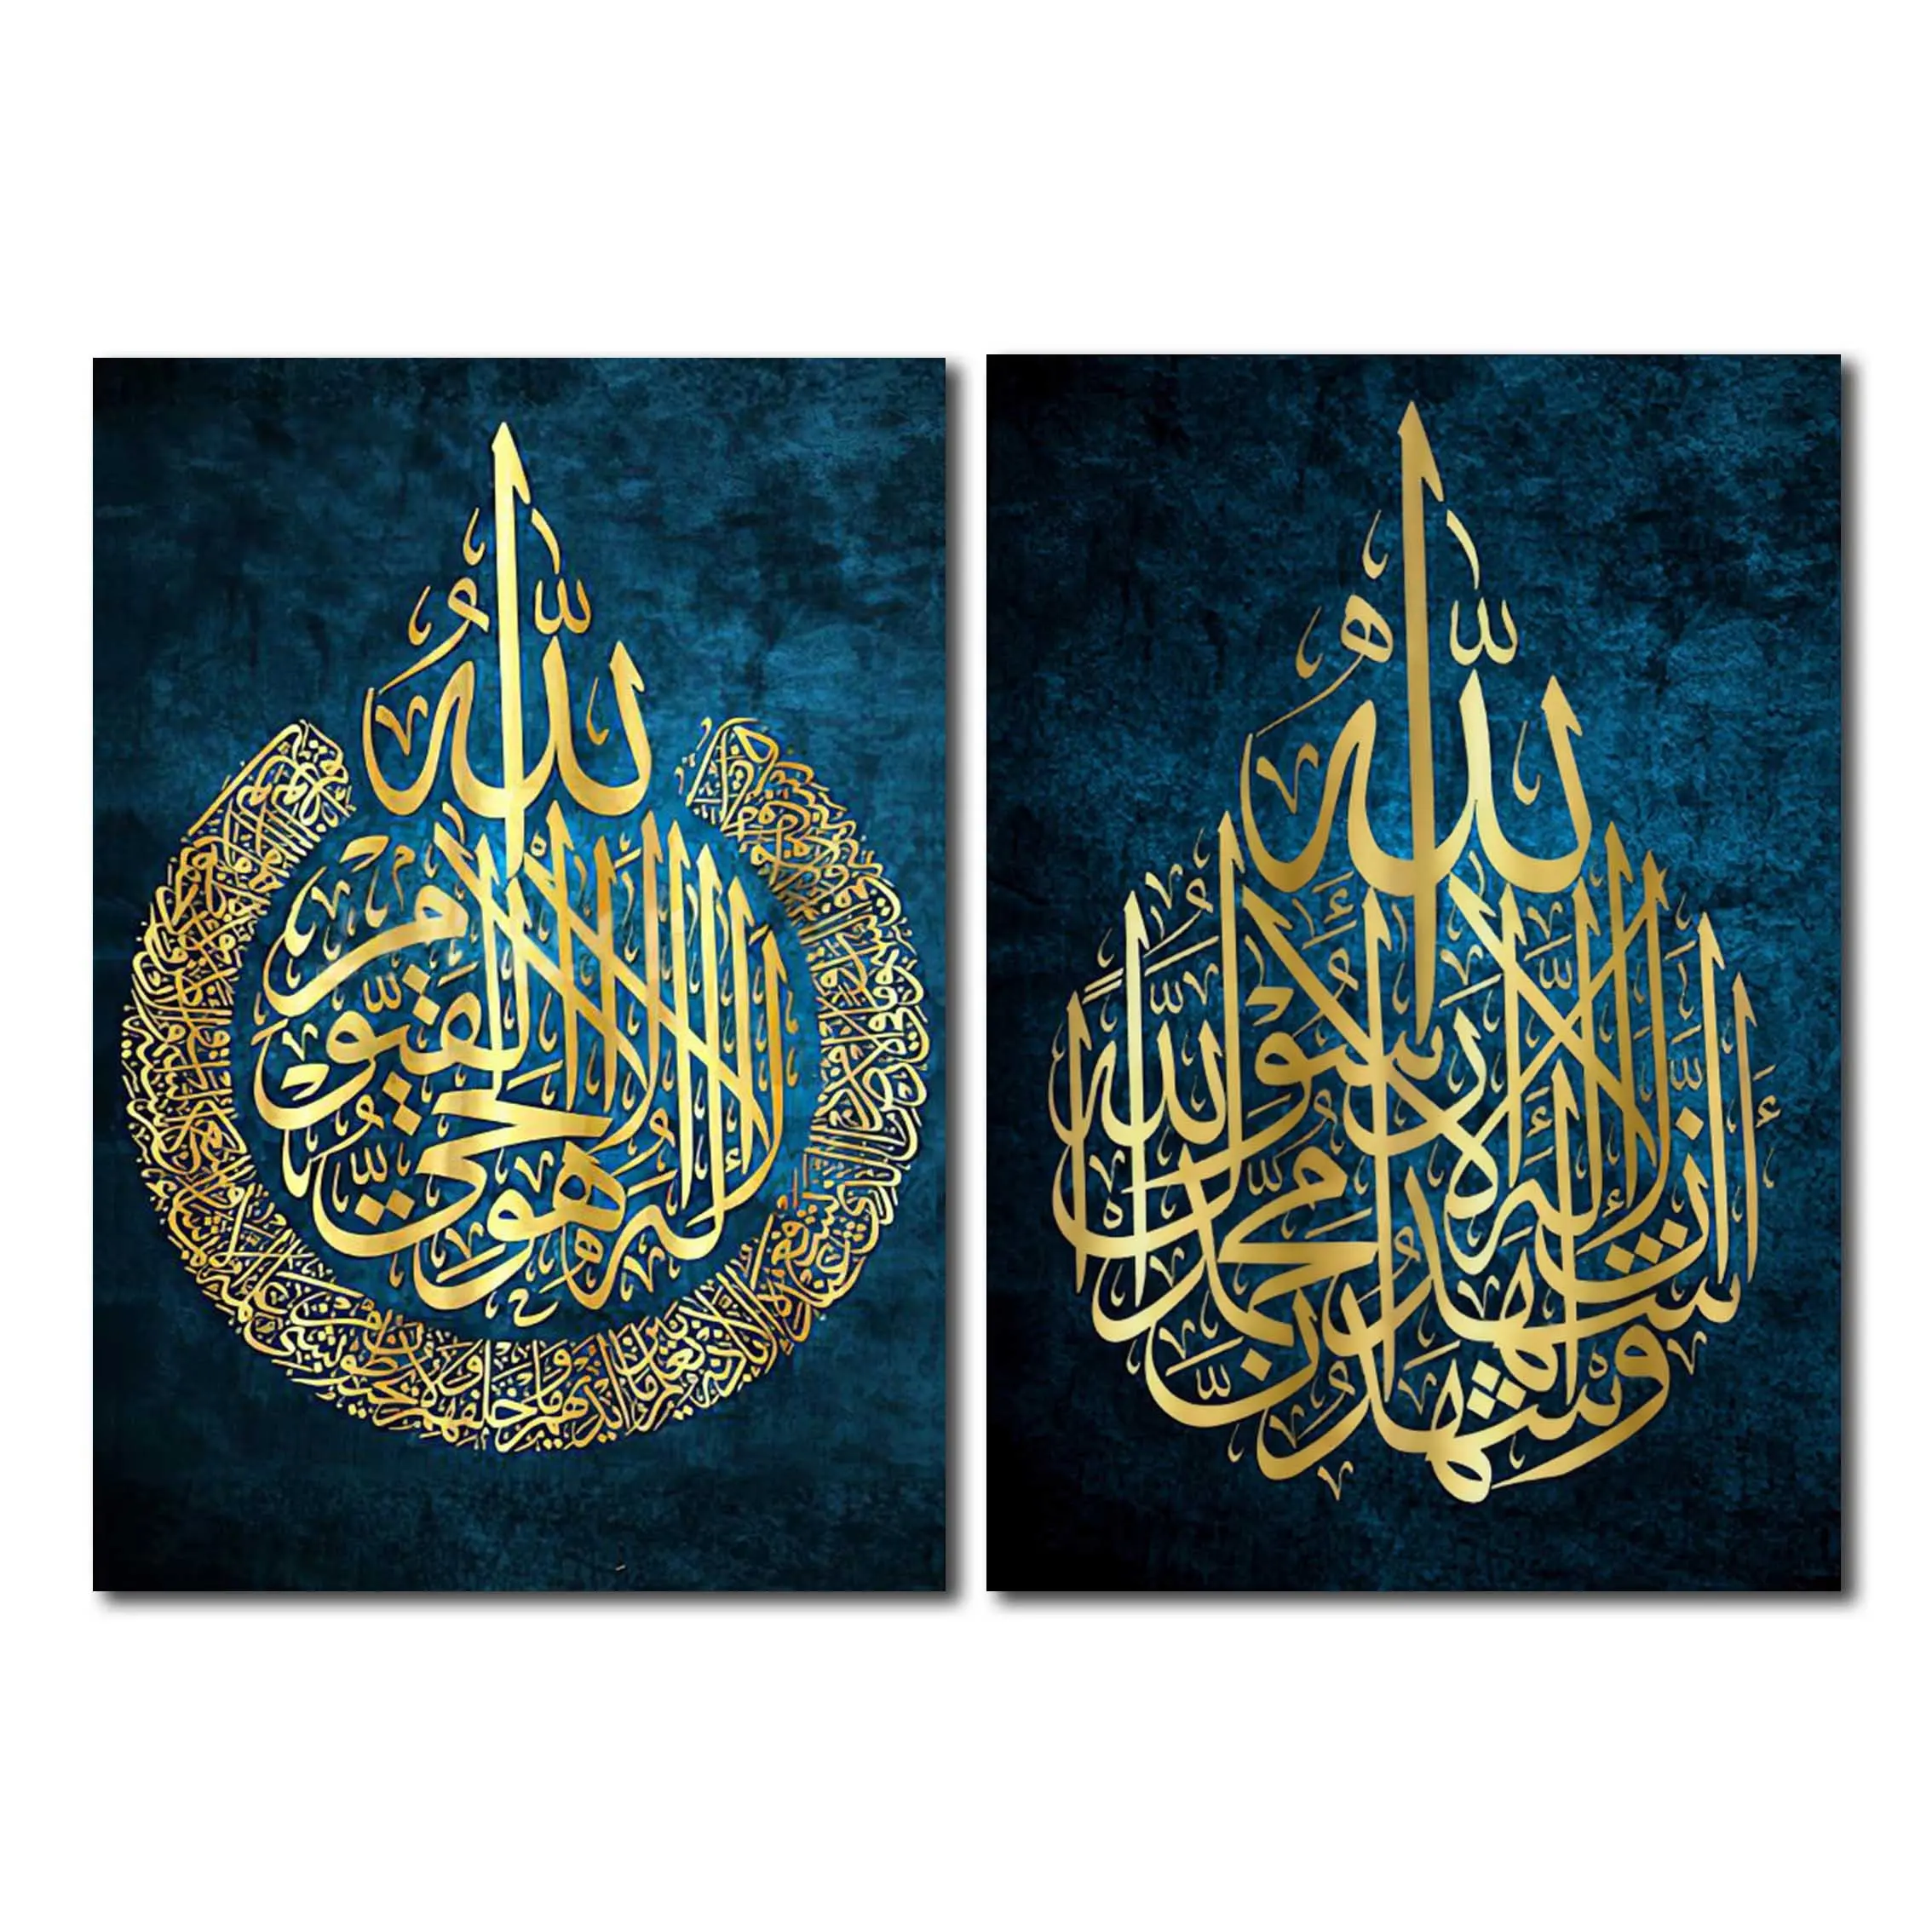 Religiosa Astratta Islam Pittura Pittura di Arte Della Decorazione Della Casa Murale Decorativo Dipinto A Mano della Pittura A Olio